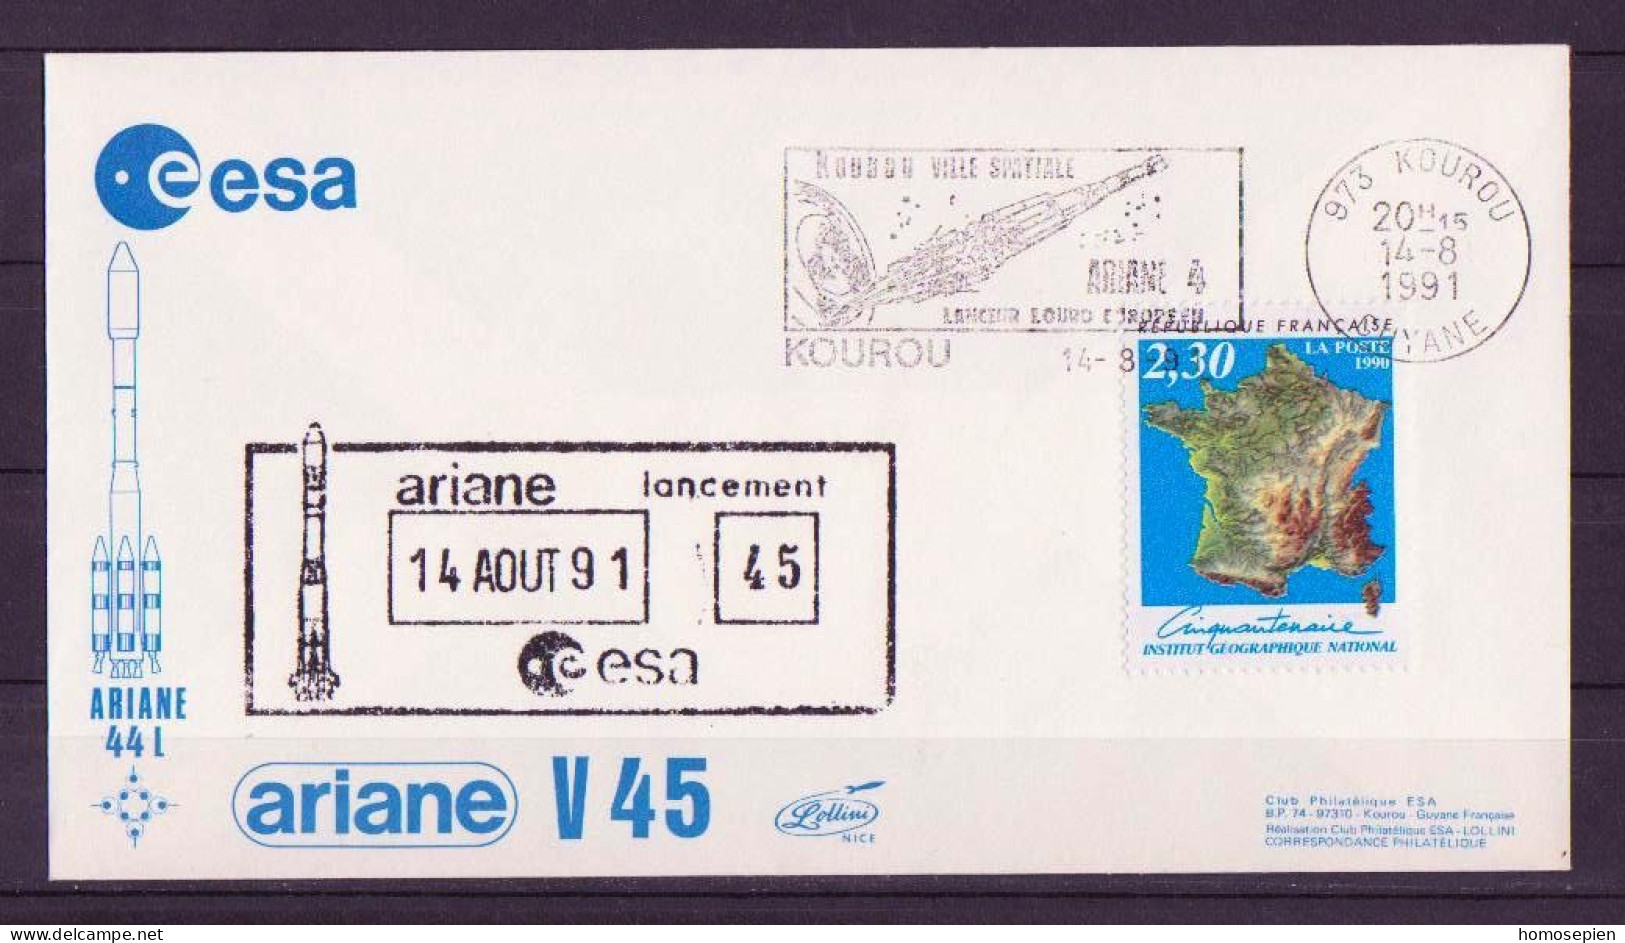 Espace 1991 08 15 - ESA - Ariane V45 - Officielle - Kourou - Europe